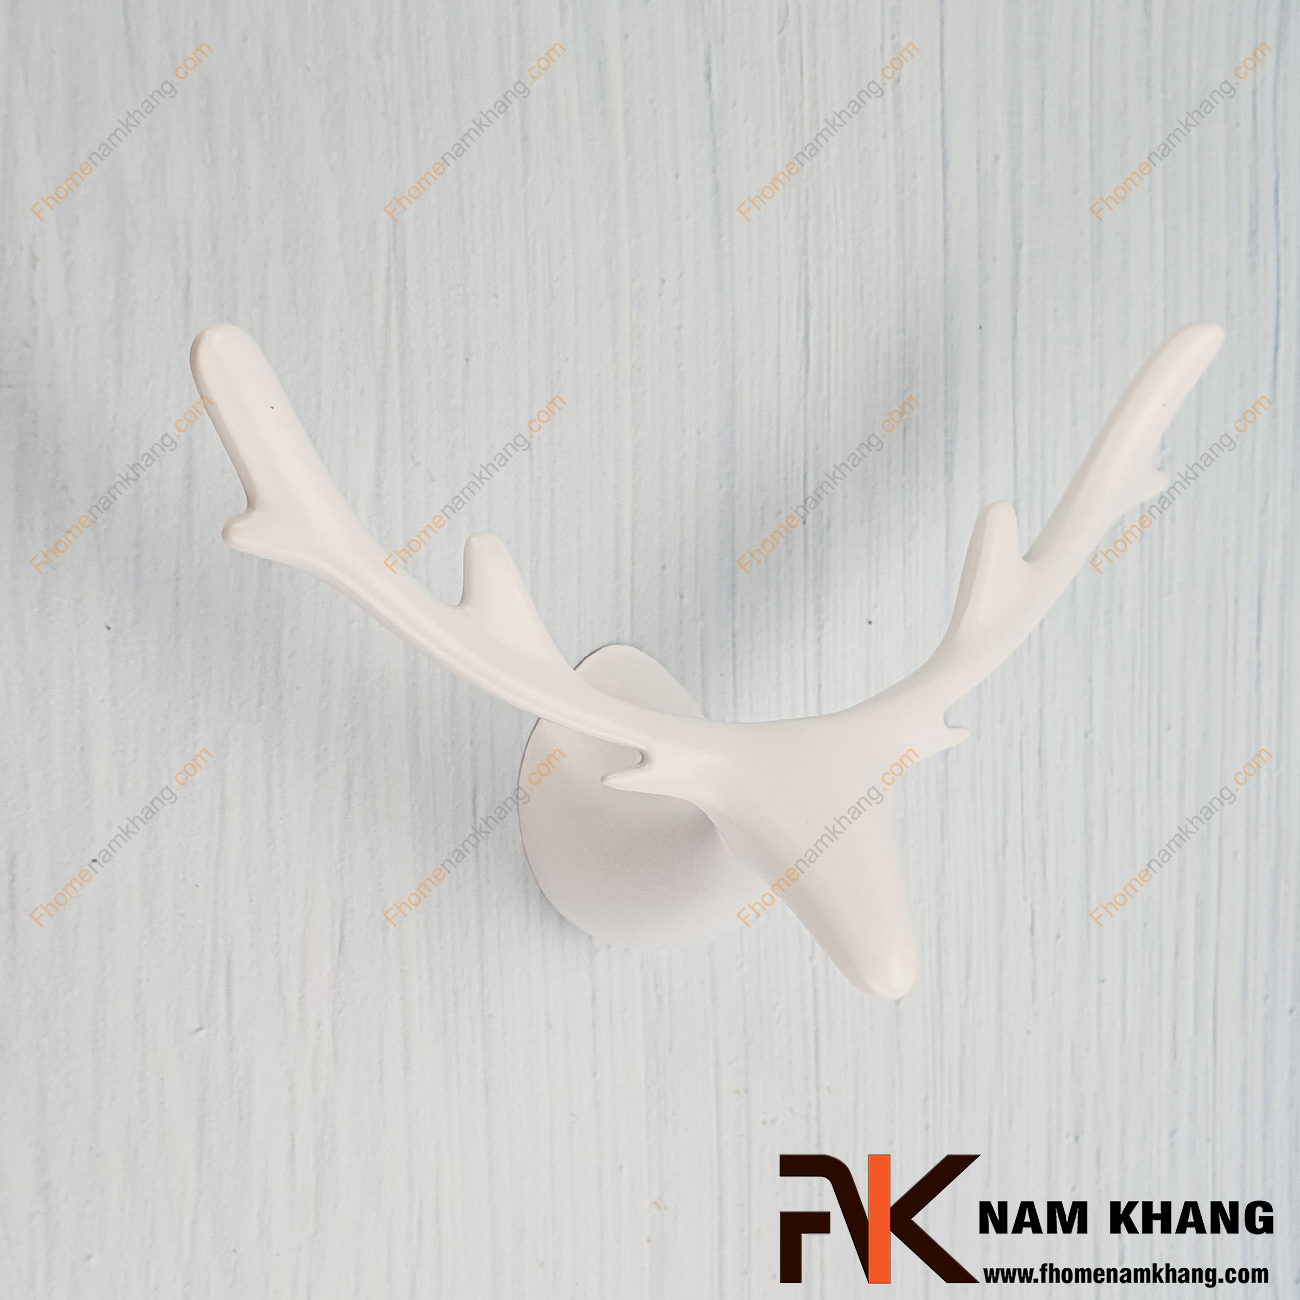 Móc treo tường dạng đầu hươu màu trắng cao cấp NK457-T - dạng móc treo tường lấy cảm hứng theo kiểu đầu hươu, đây là một dạng móc treo cao cấp với cả chất liệu và độ hoàn thiện bề mặt độc đáo.